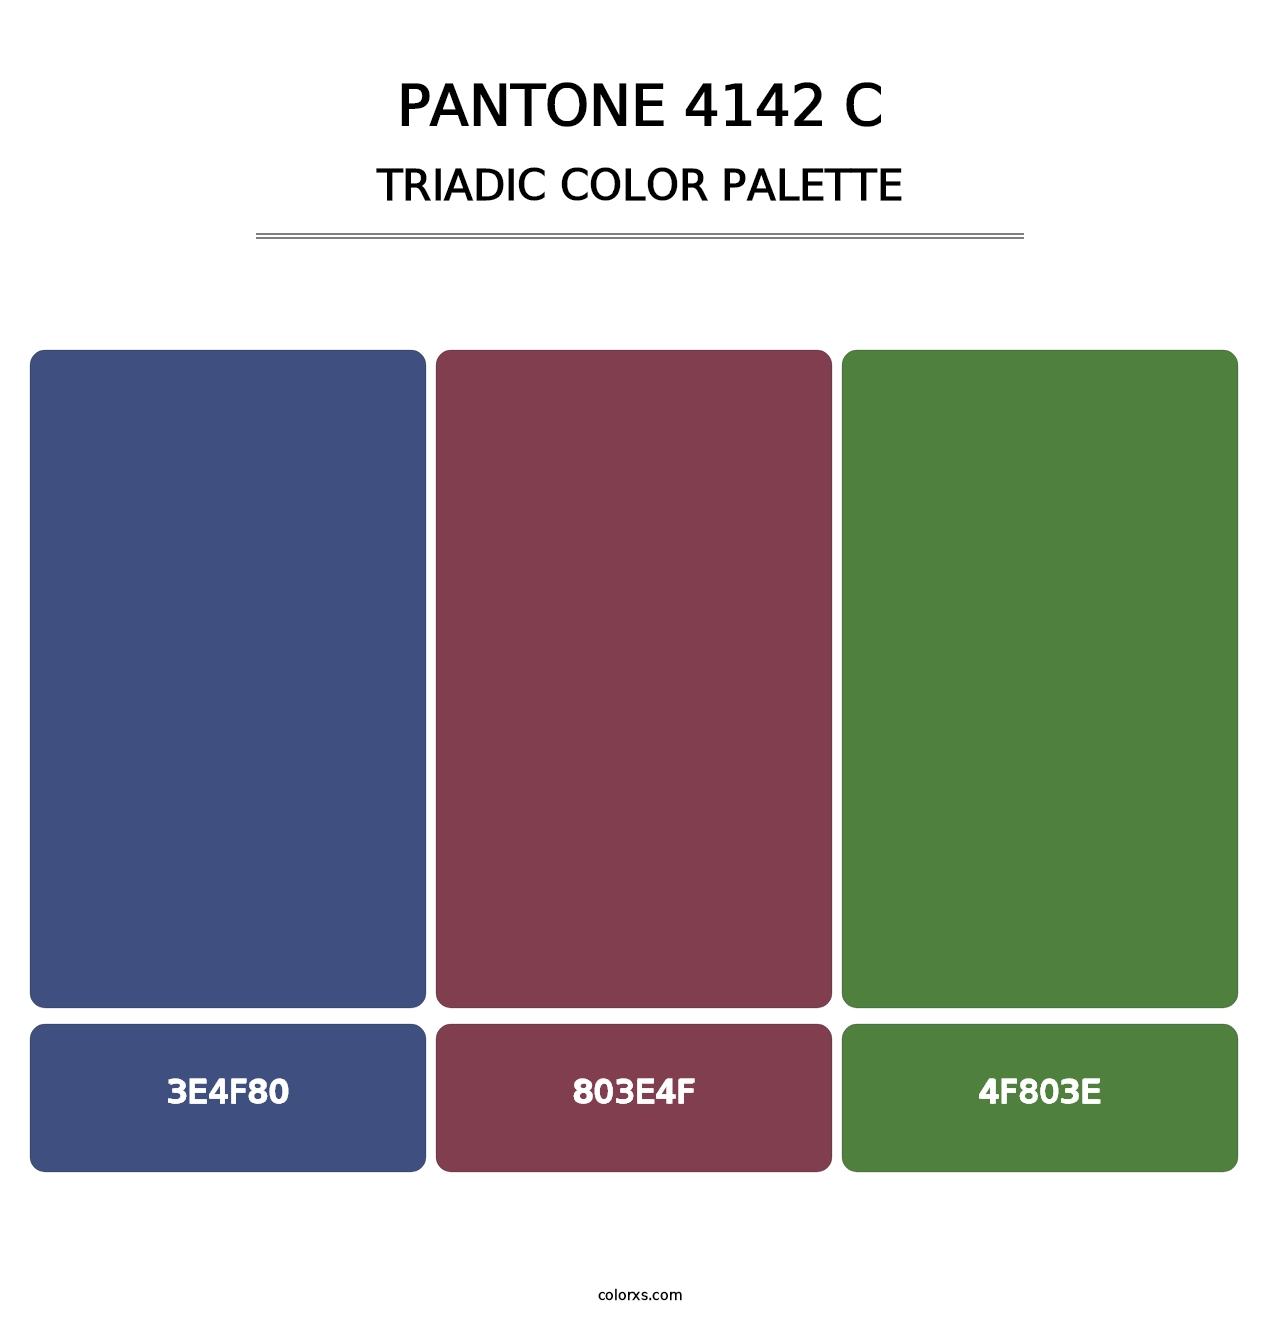 PANTONE 4142 C - Triadic Color Palette